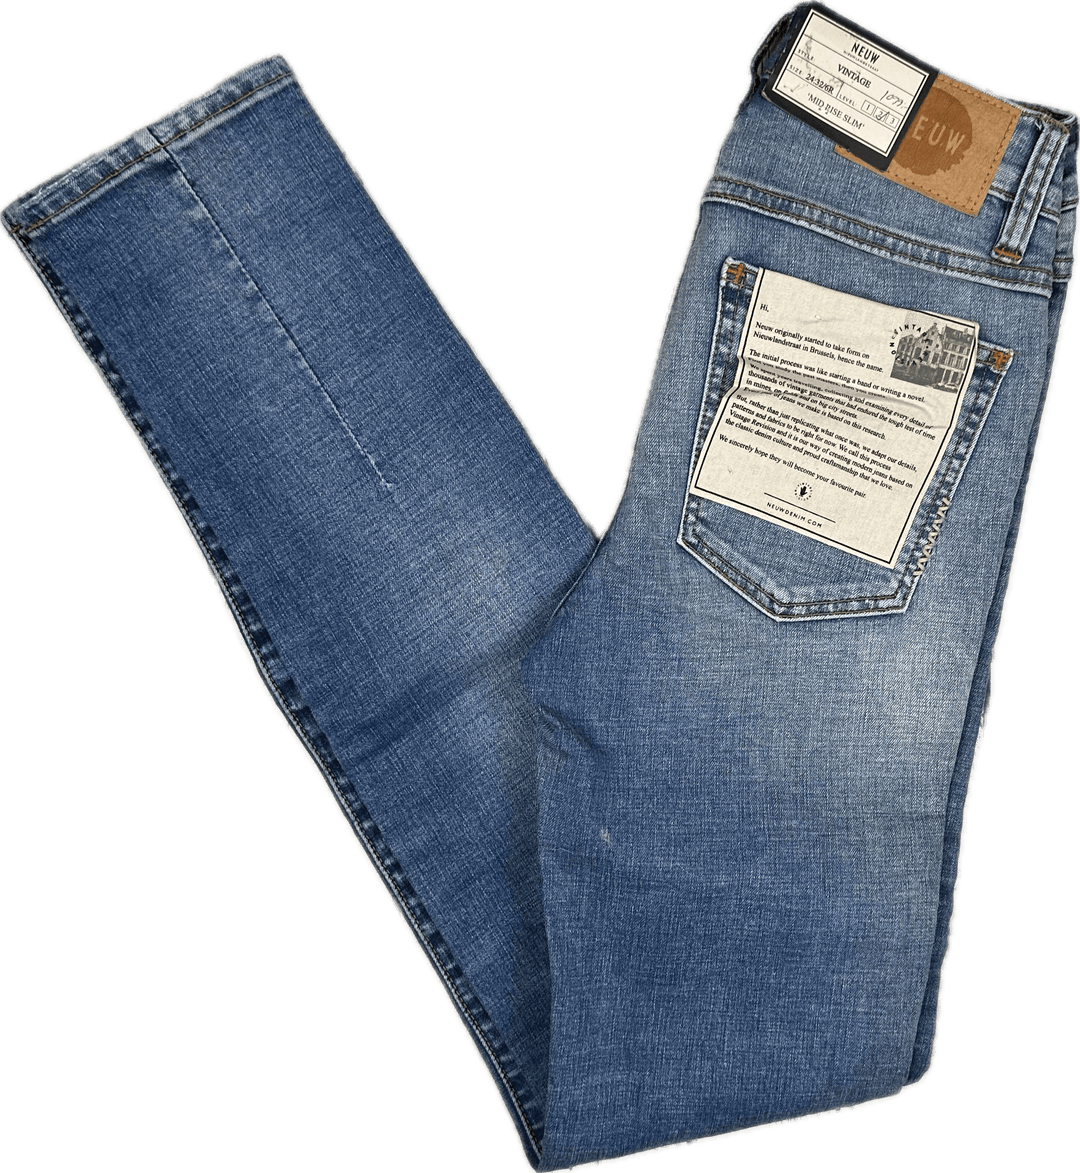 NWT- Ladies NEUW 'Vintage Skinny'' Jeans - Size 24/32 - Jean Pool